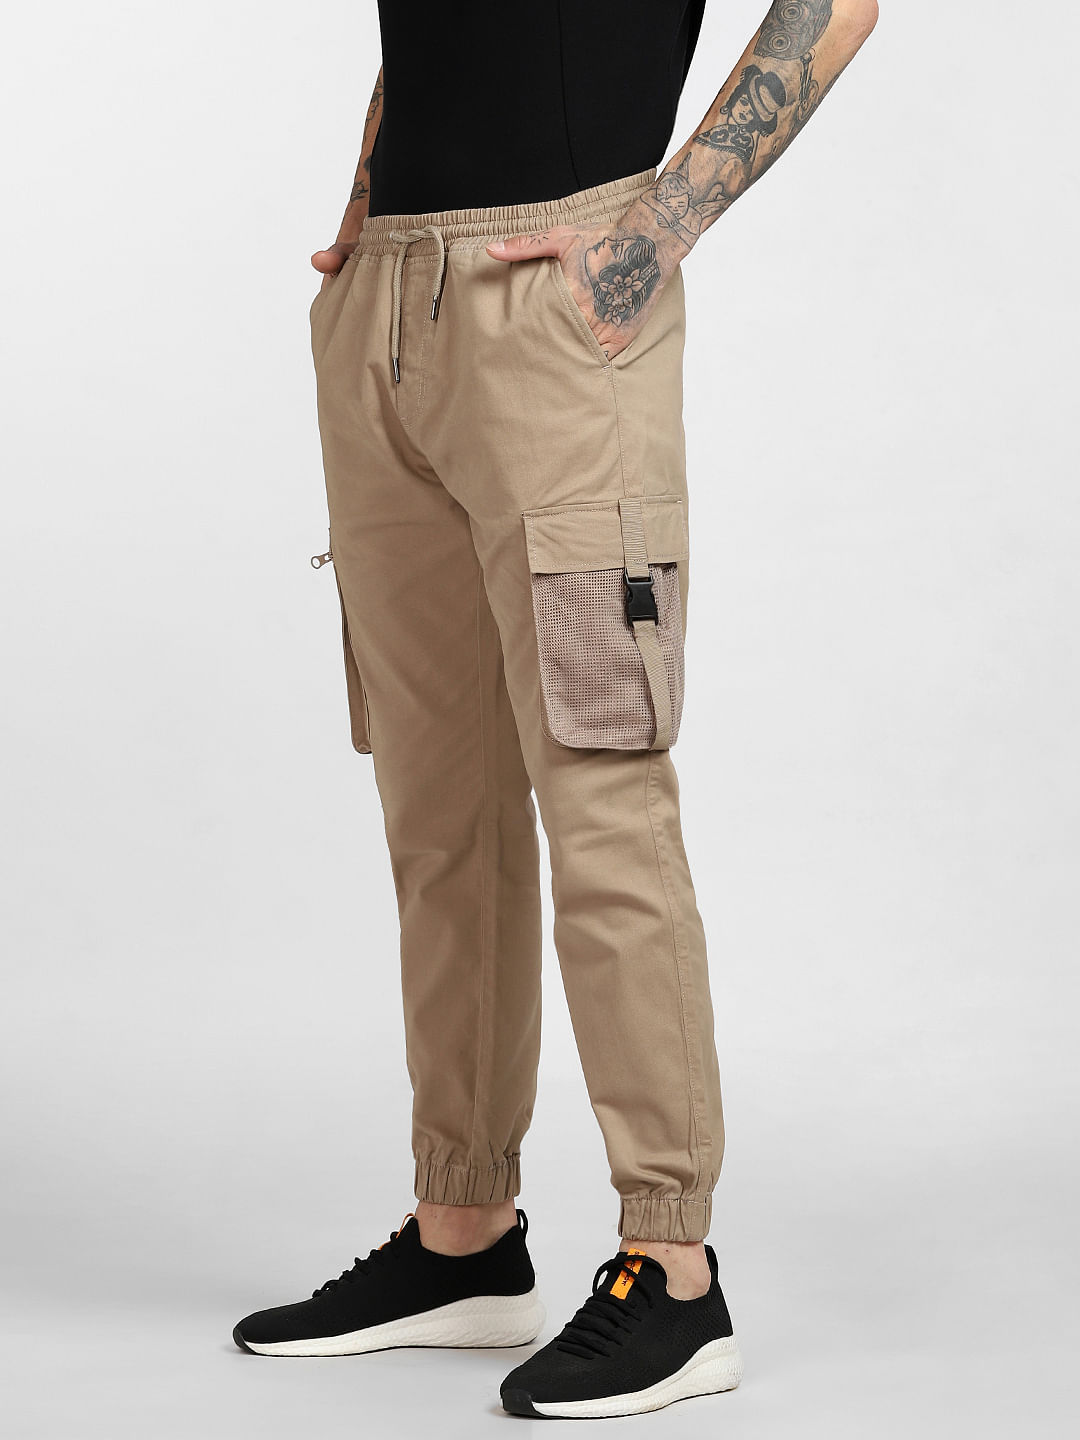 Shop Latest Thunder Black Cargo Pants Mens – DAKS NEO CLOTHING CO.INDIA